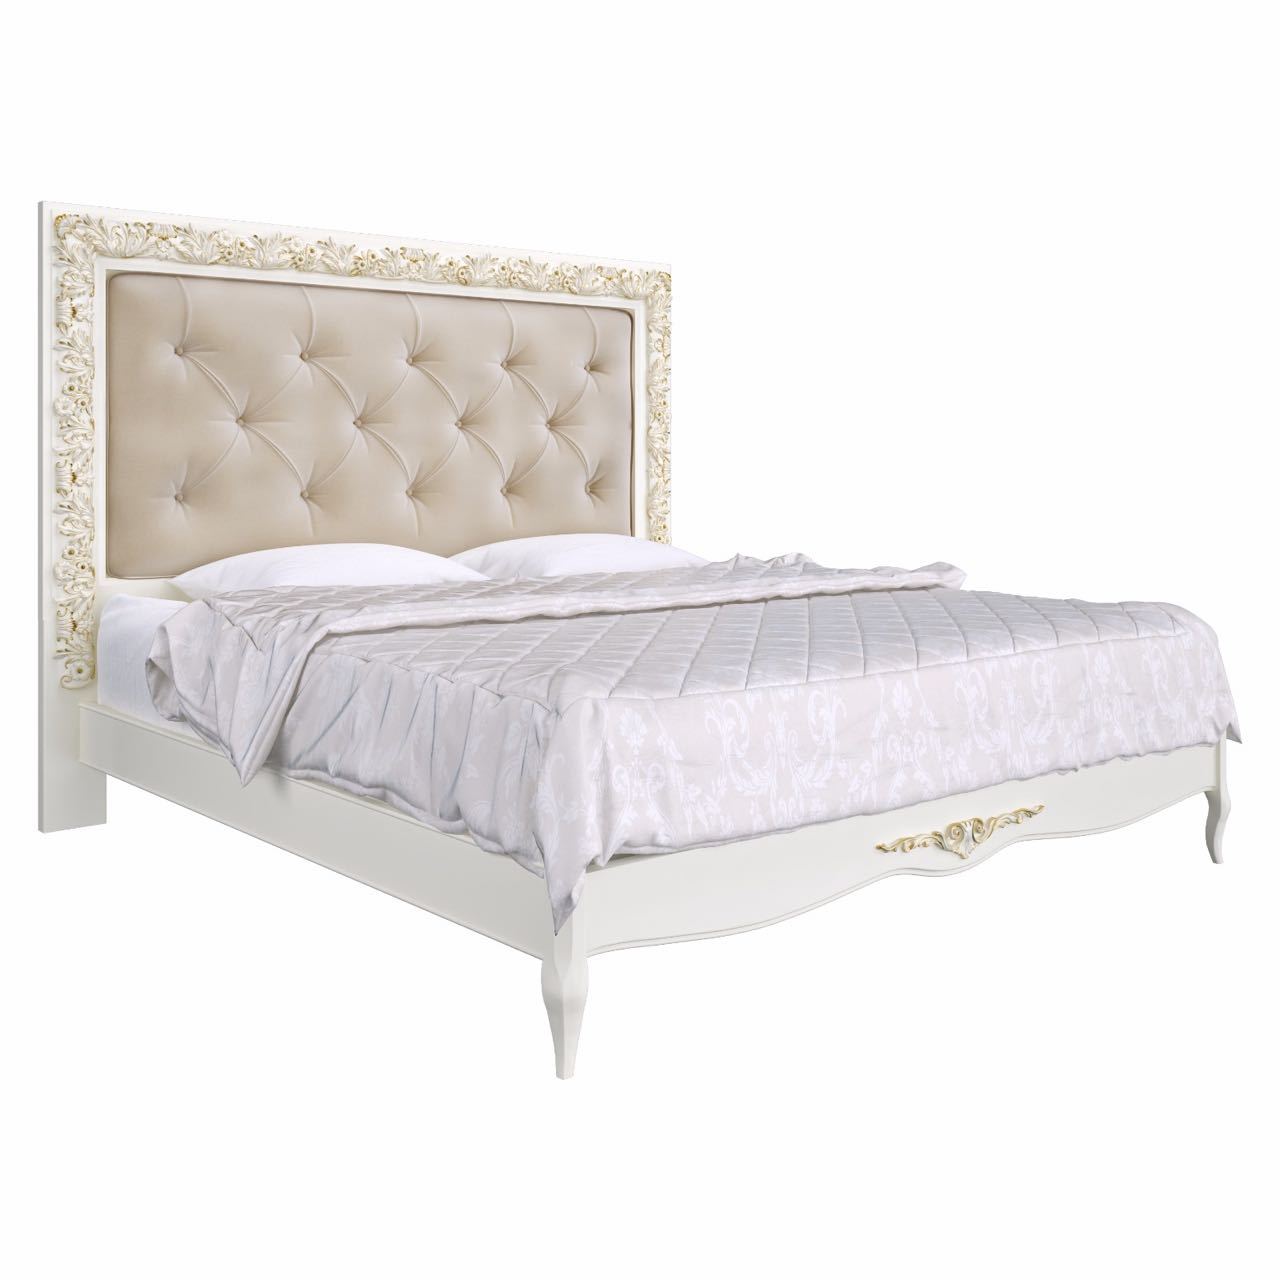 Кровать 2я модель 180*200  Romantic Gold  R160g от салона мебели Альянс